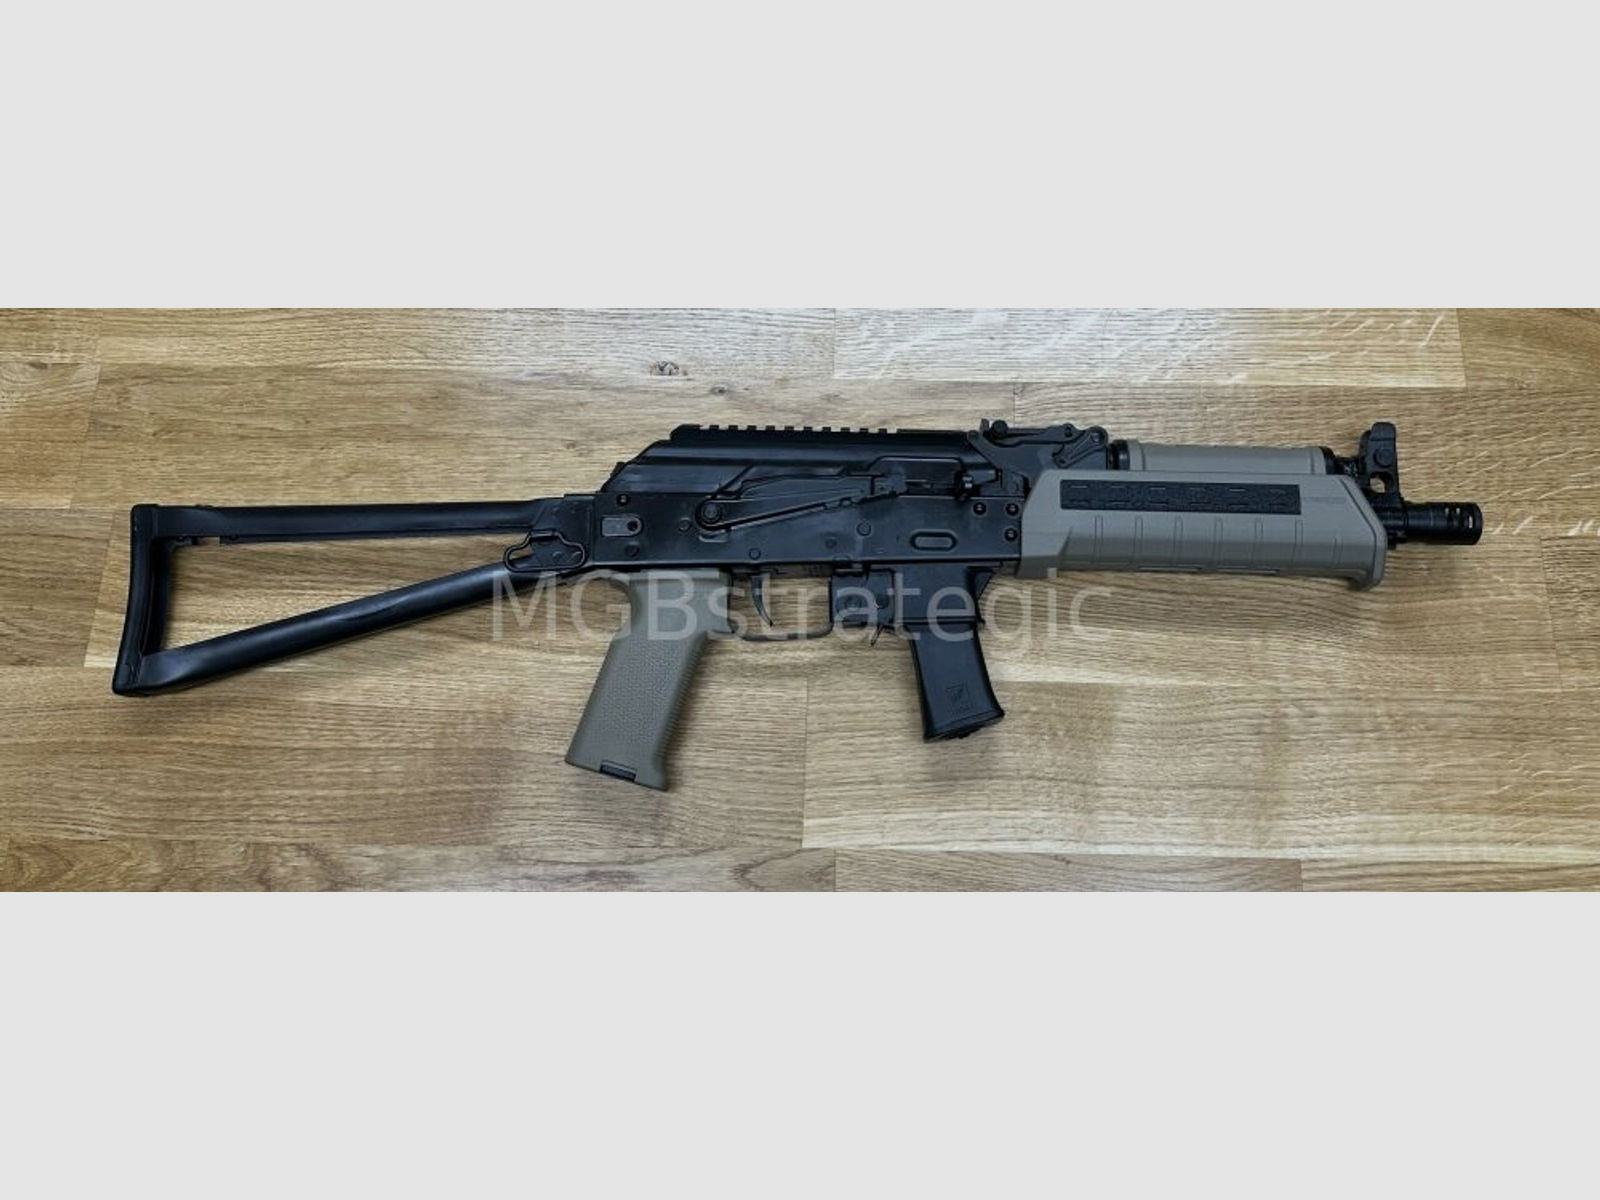 Kalashnikov USA KR-9 SBR Sport mit Festschaft - halbautom. Büchse 9mmLuger	 sportlich zugelassen! inkl. 6x 10 Schuss Magazin - System AK47 AK74 AK-74 AK-47 - zivile Vityaz